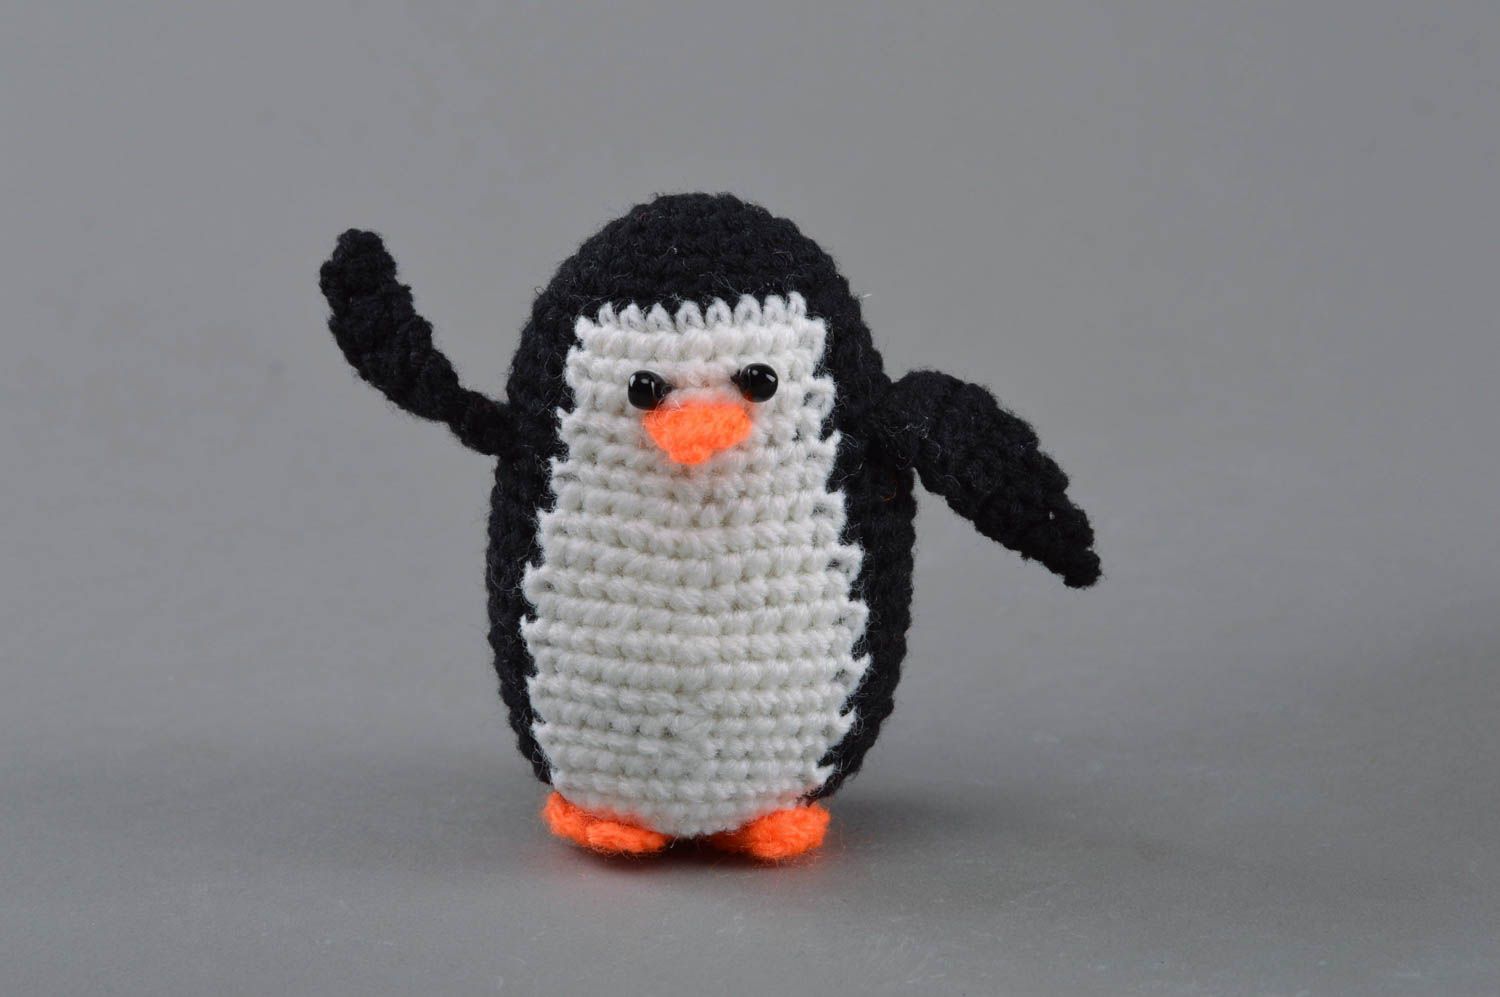 Смешная маленькая игрушка в виде пингвина черно-белая вязаная вручную для детей фото 1